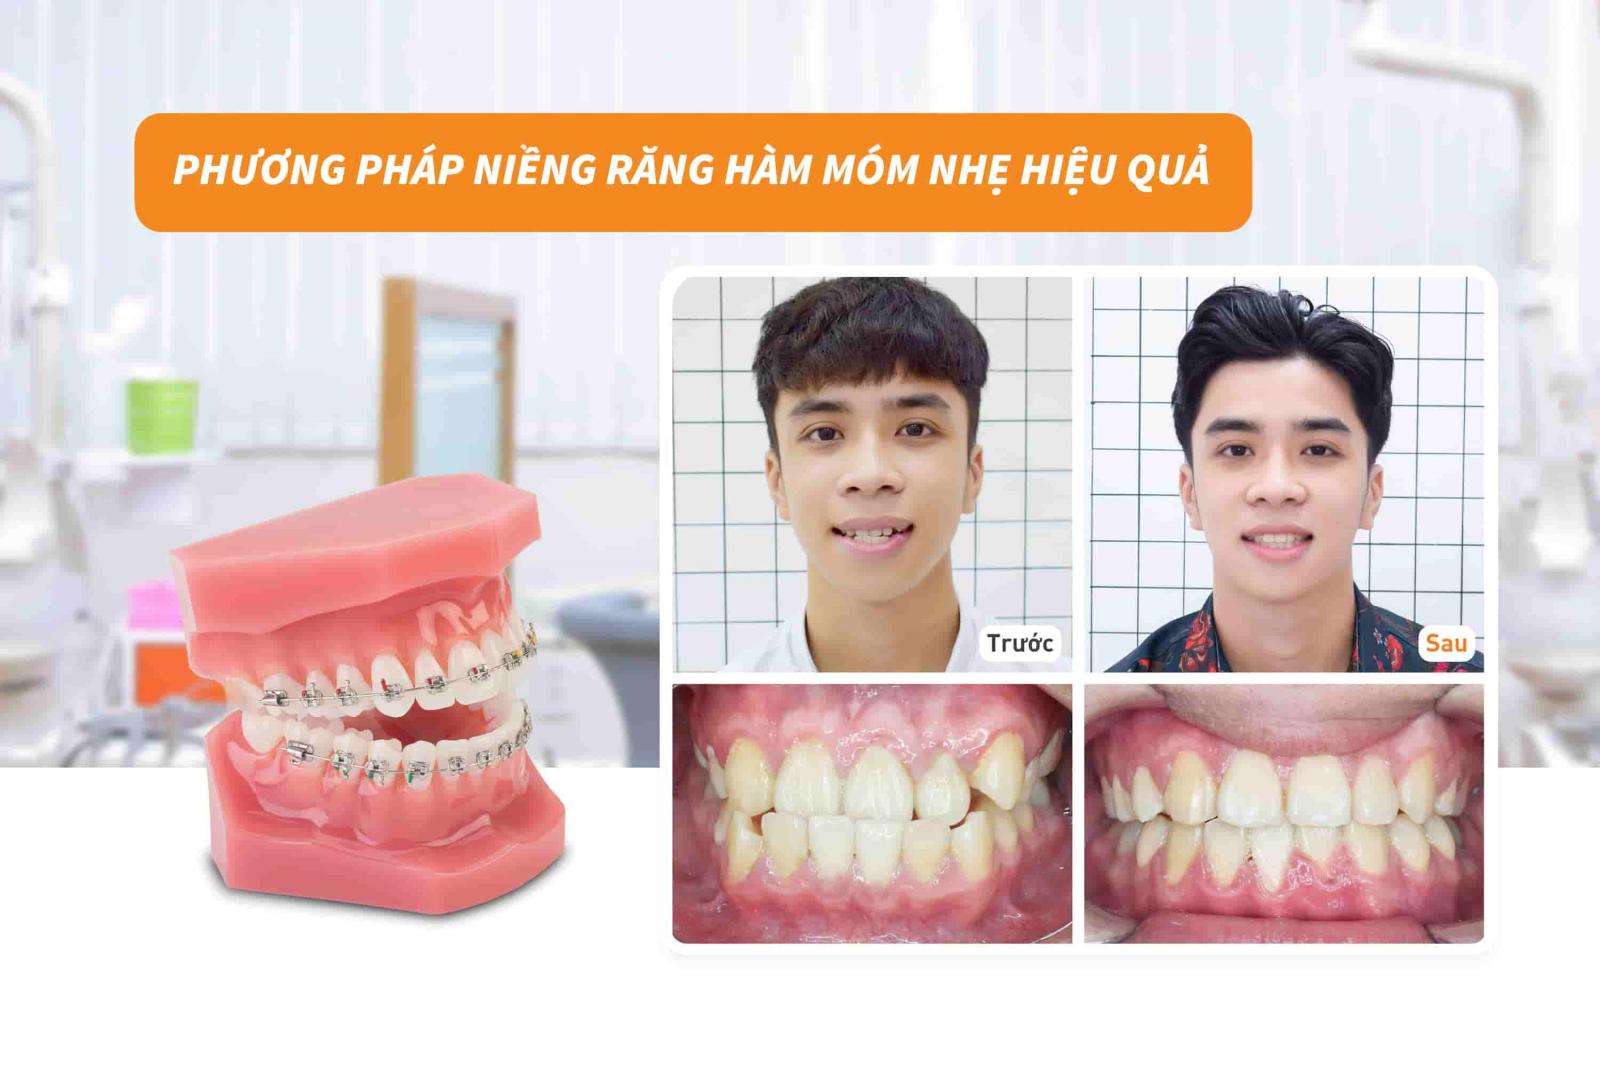 Phương pháp niềng răng hàm móm nhẹ hiệu quả